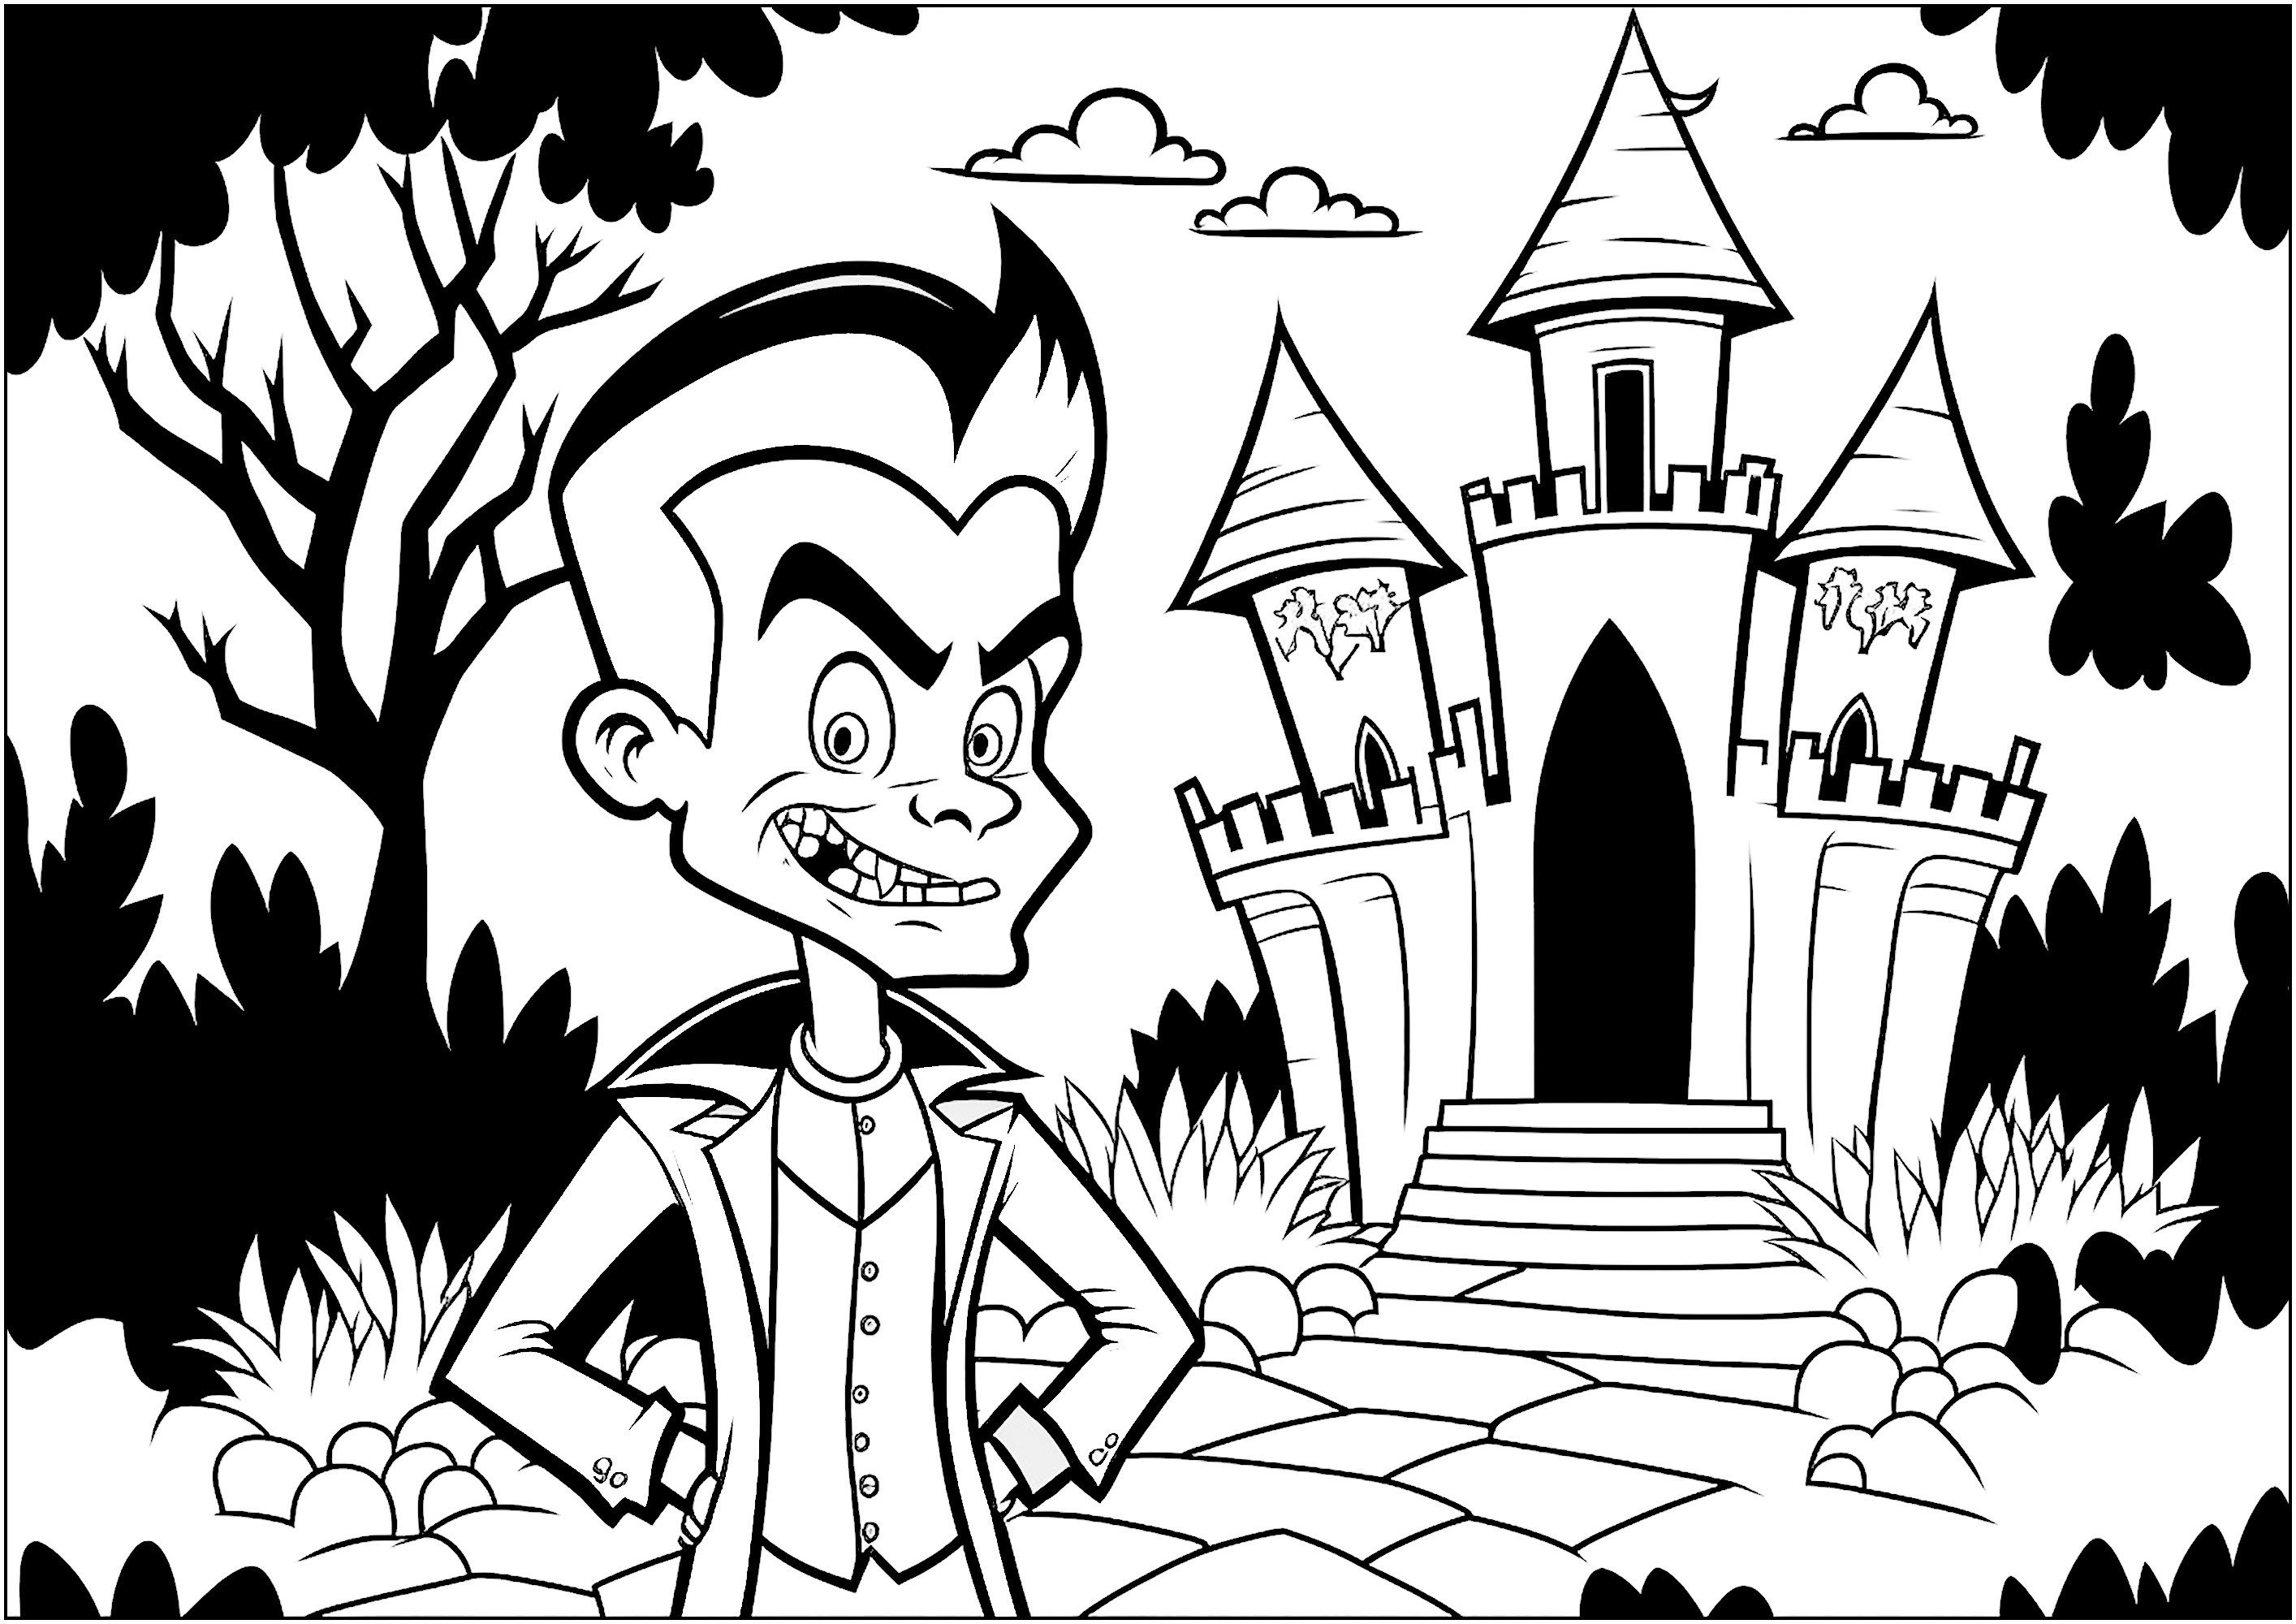 Coloreado de un vampiro frente a su lúgubre castillo